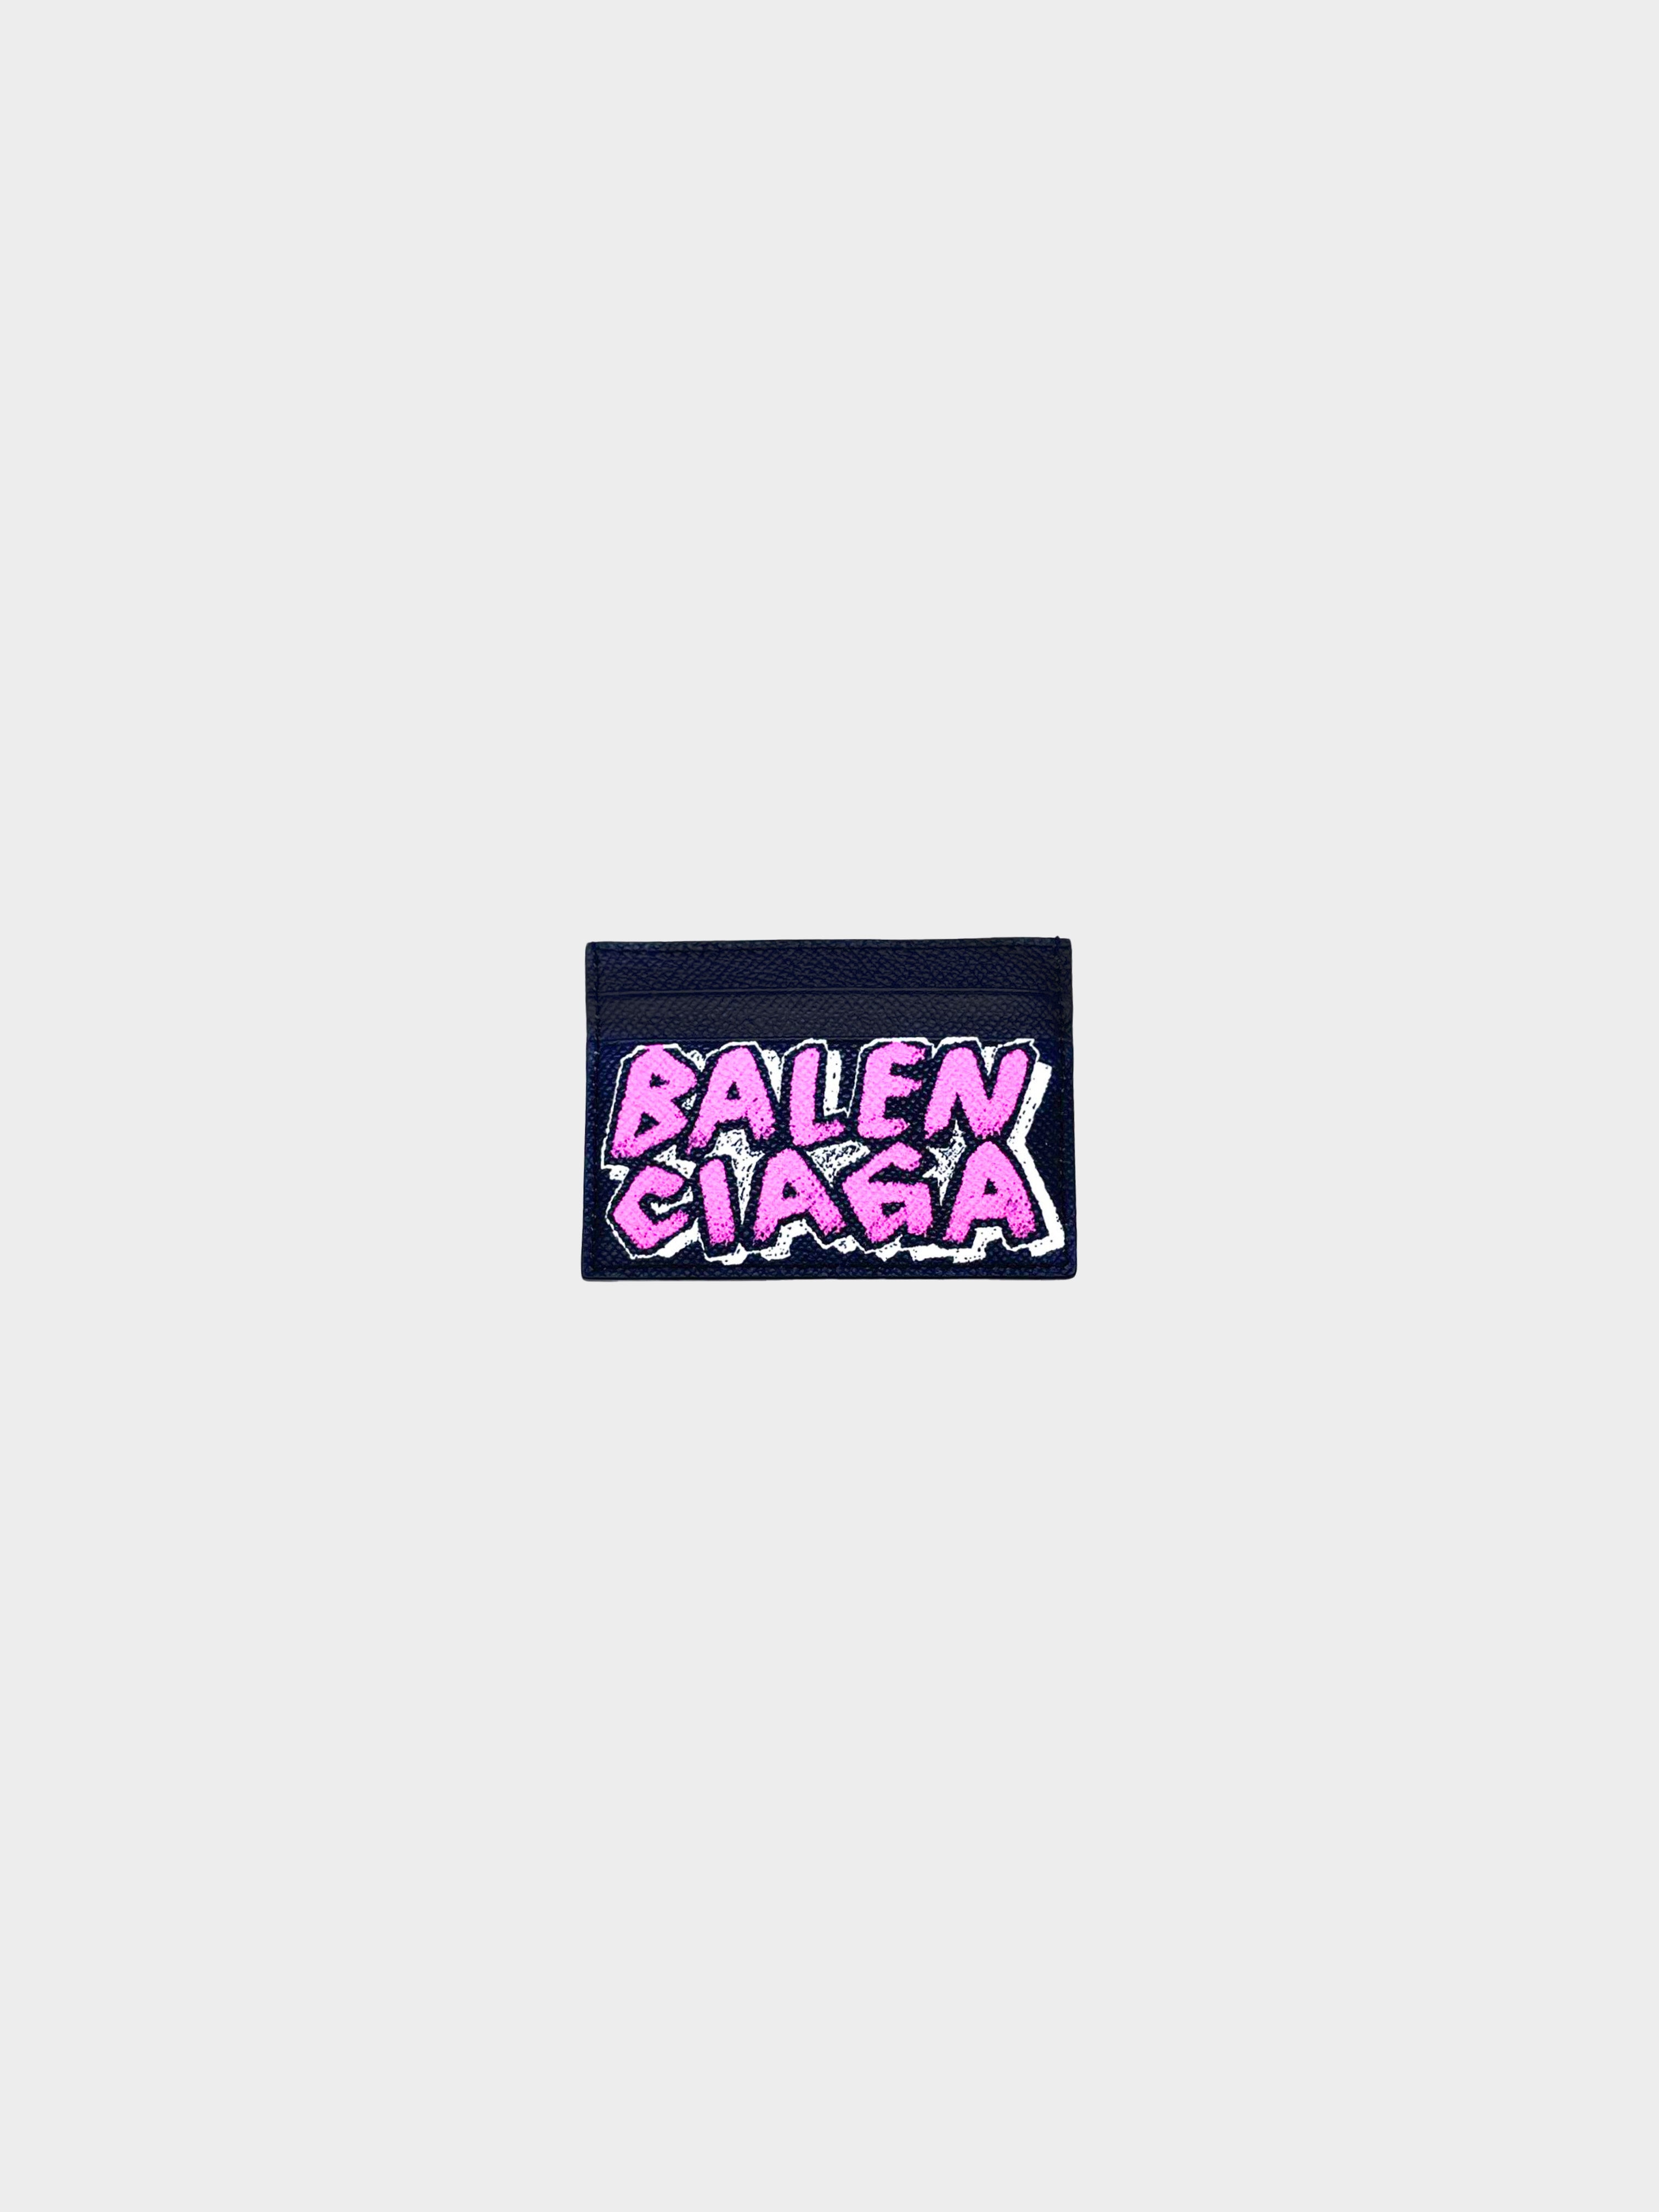 Balenciaga 2017 Graffiti Collection Cardholder